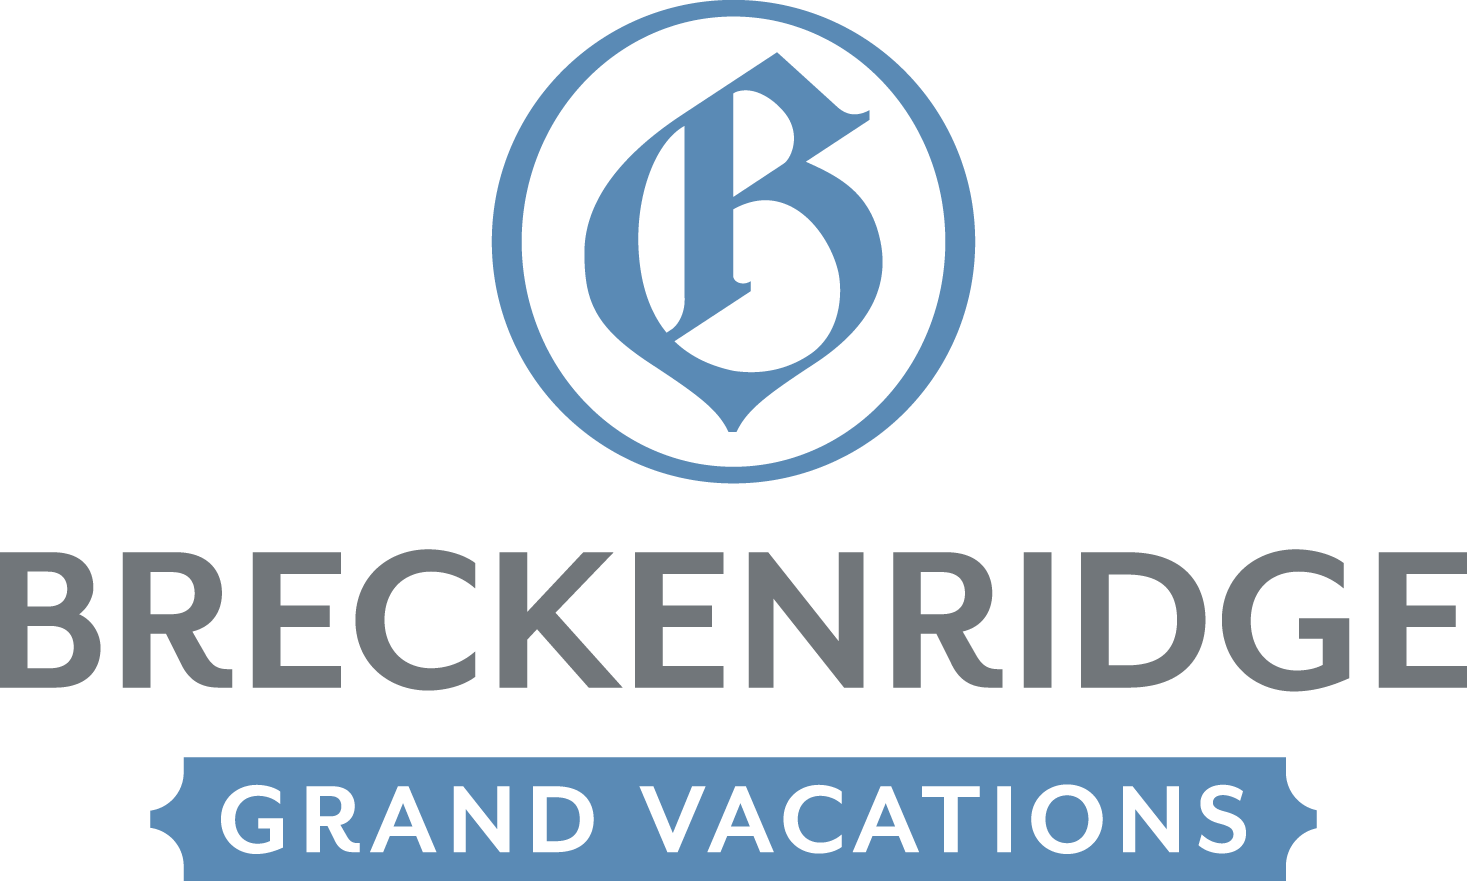 Breckenridge Grand Vacations Company Logo